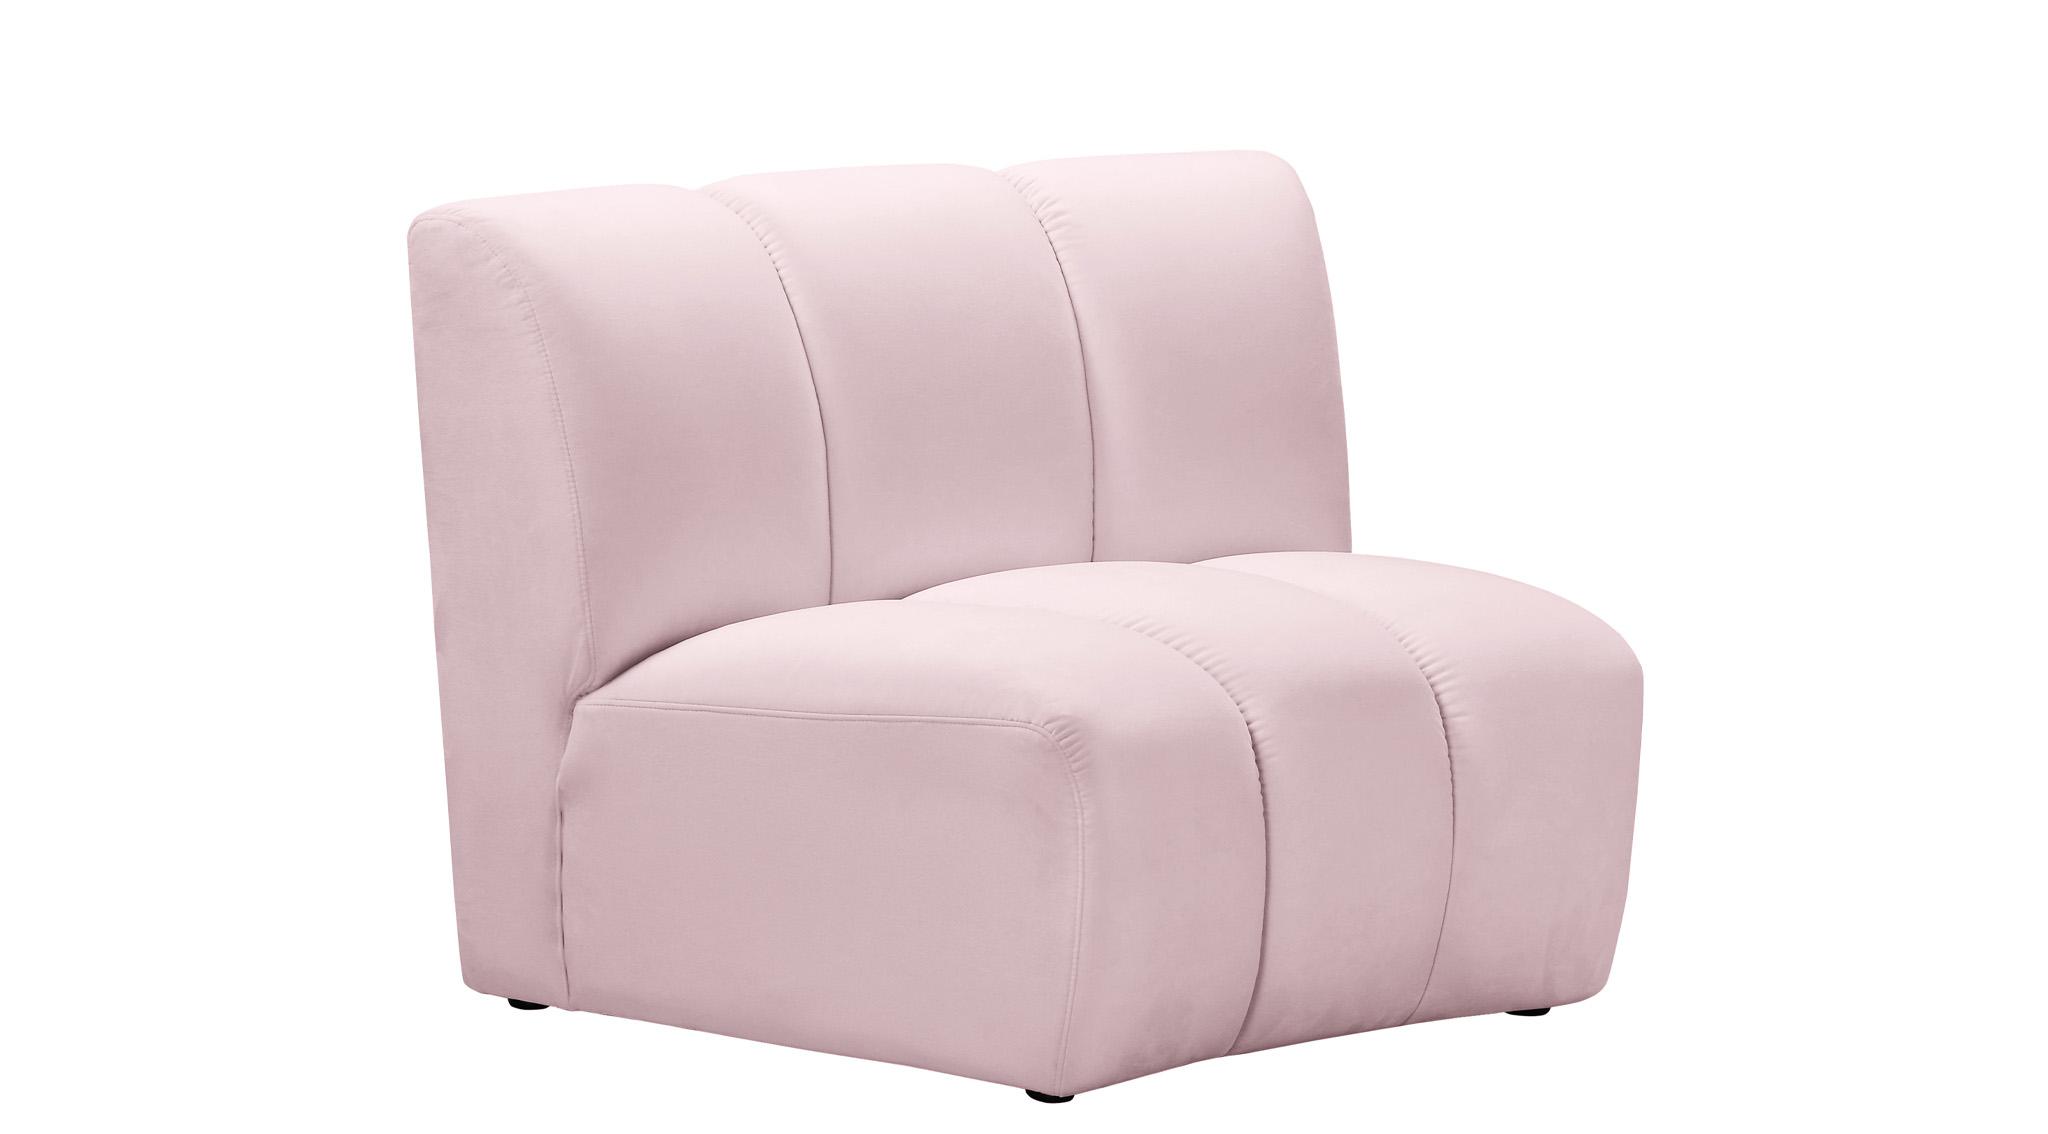 

    
638Pink-9PC Meridian Furniture Modular Sectional Sofa
